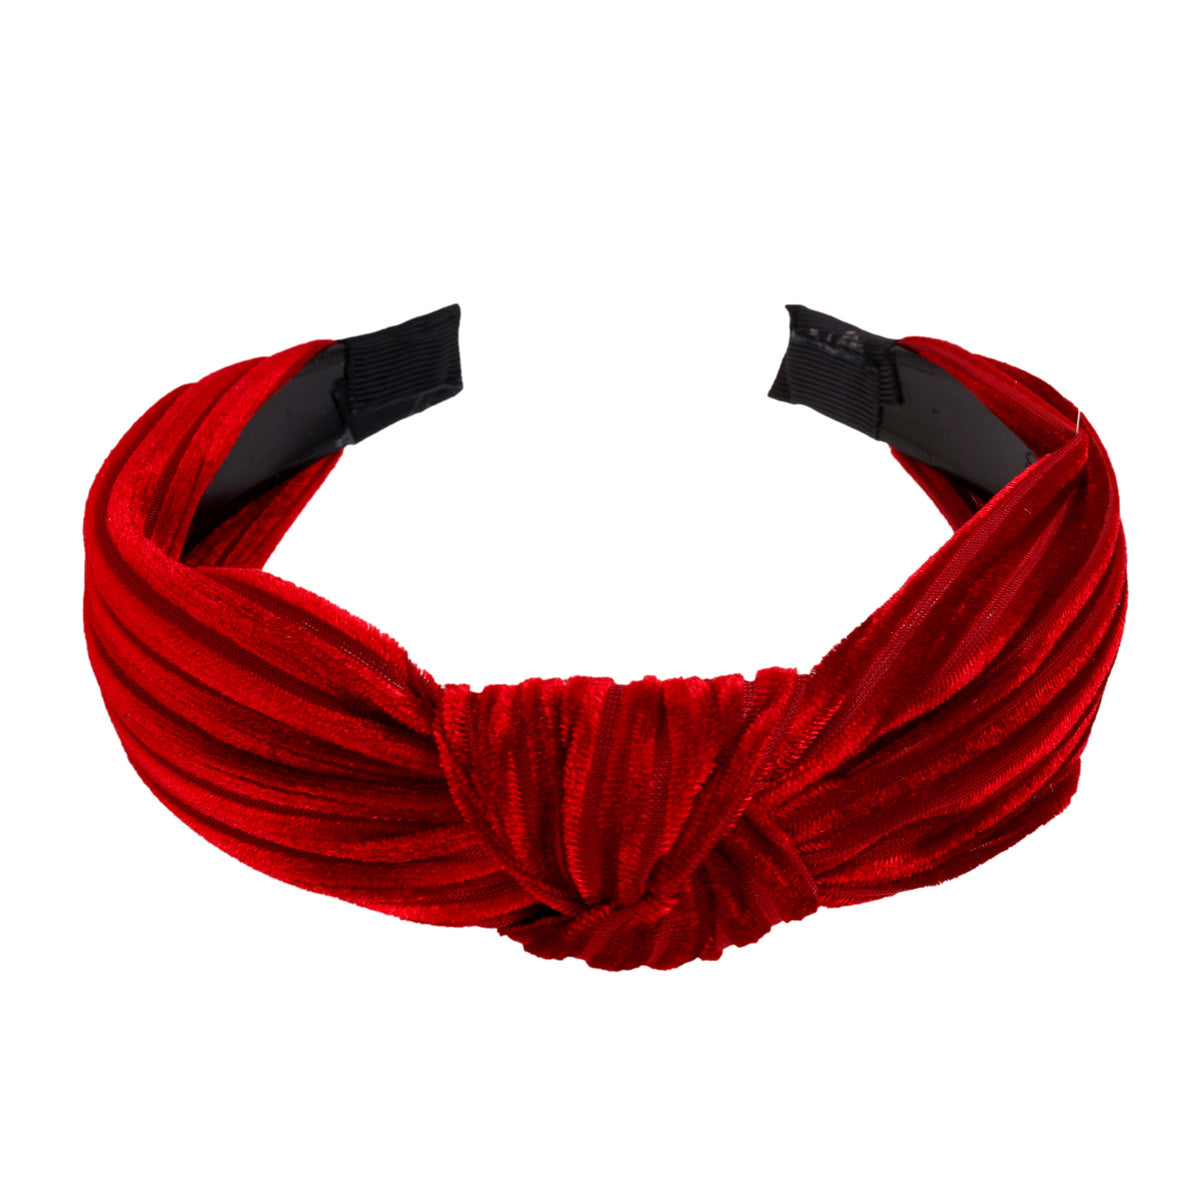 Punainen sametti hiuspanta 104080052211 | Ninja.fi